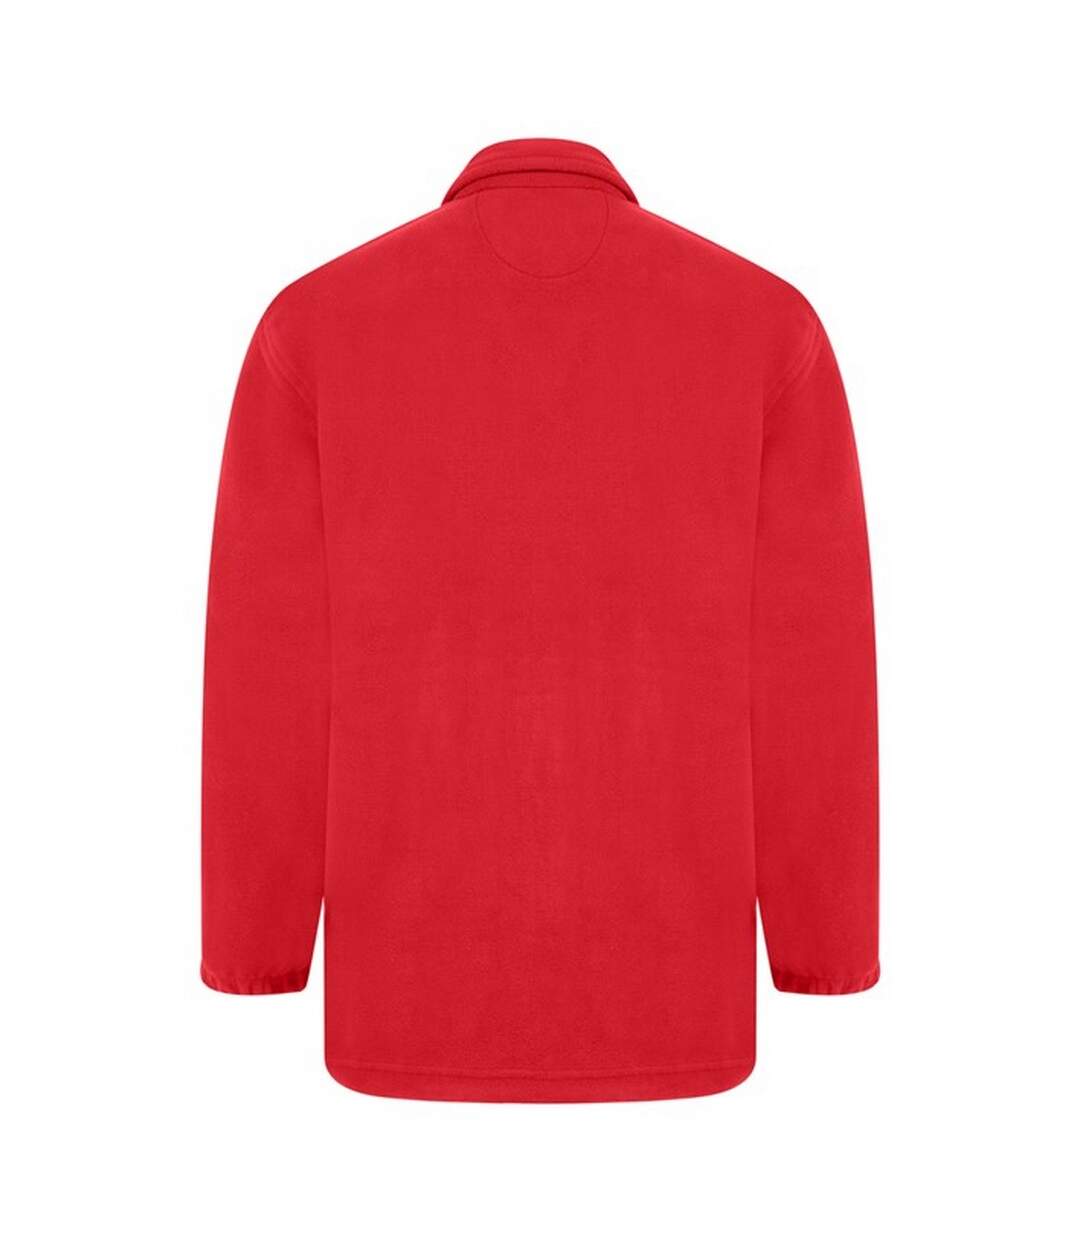 Absolute Apparel Heritage Full Zip Fleece (Red) - UTAB128